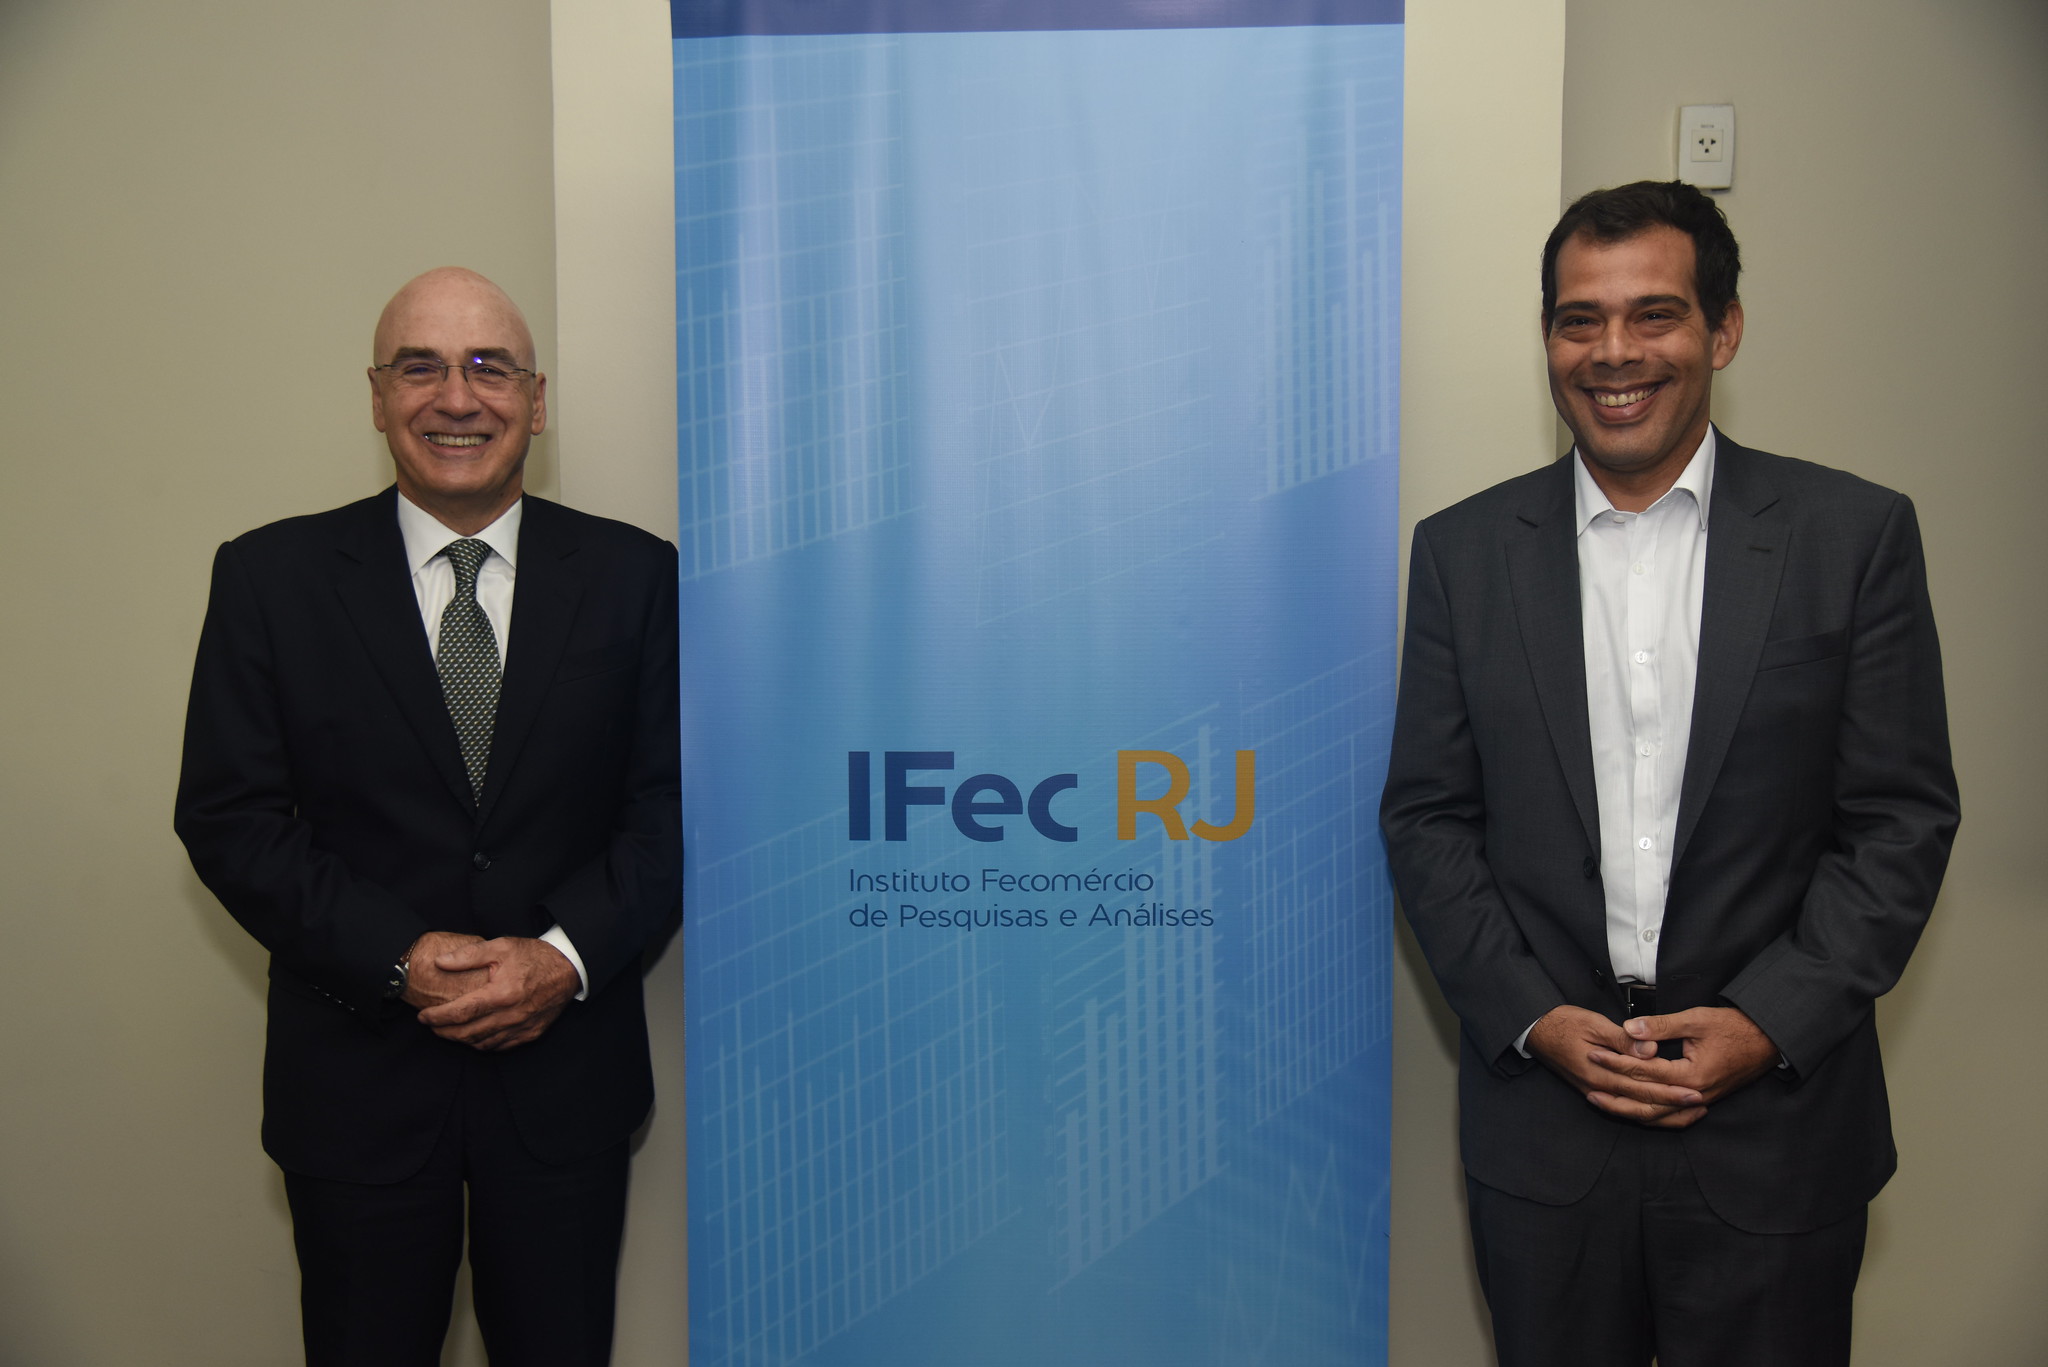 IFec RJ se consolida como um dos principais institutos de pesquisa do estado do RJ